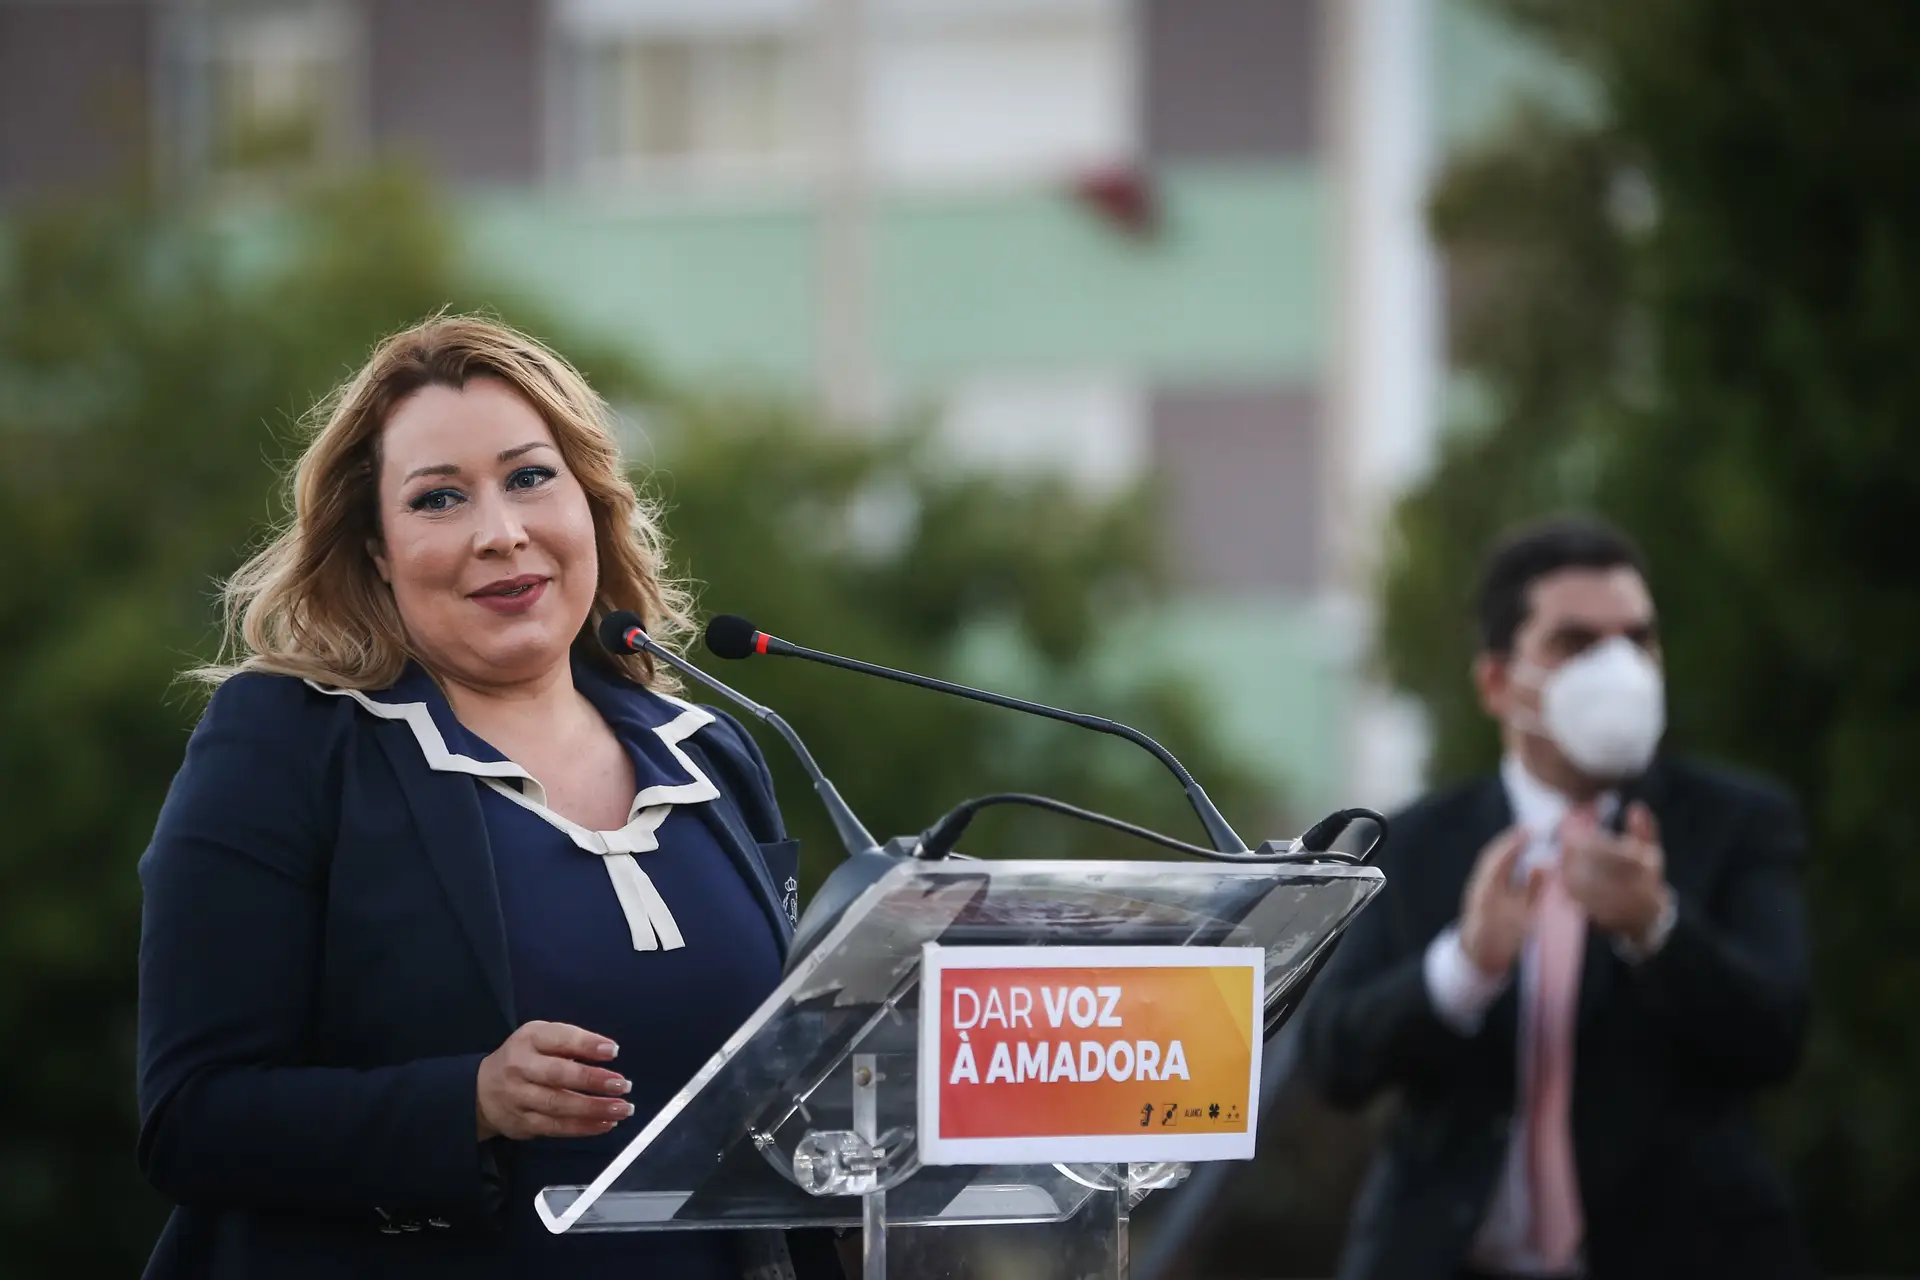 Autárquicas: Suzana Garcia assume responsabilidade pela derrota na Amadora